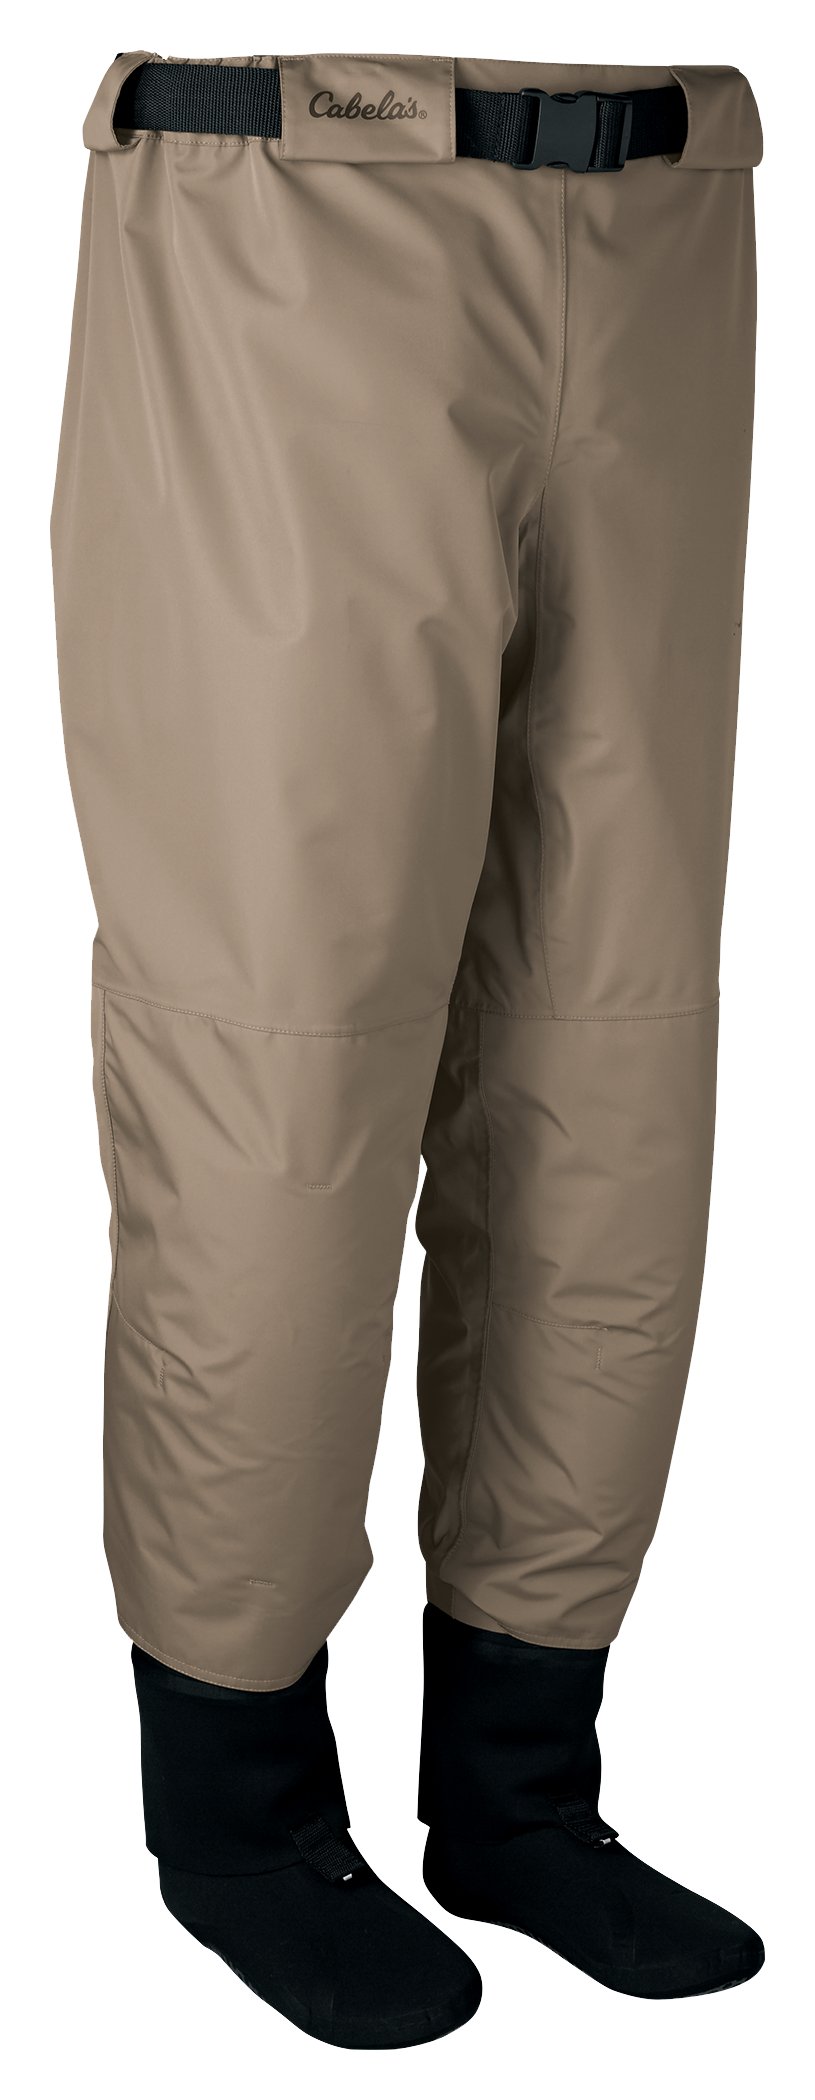 Cabela’s Fishing Pants Mens XL Waders Tan Suspenders Waterproof Feet  Drawstring